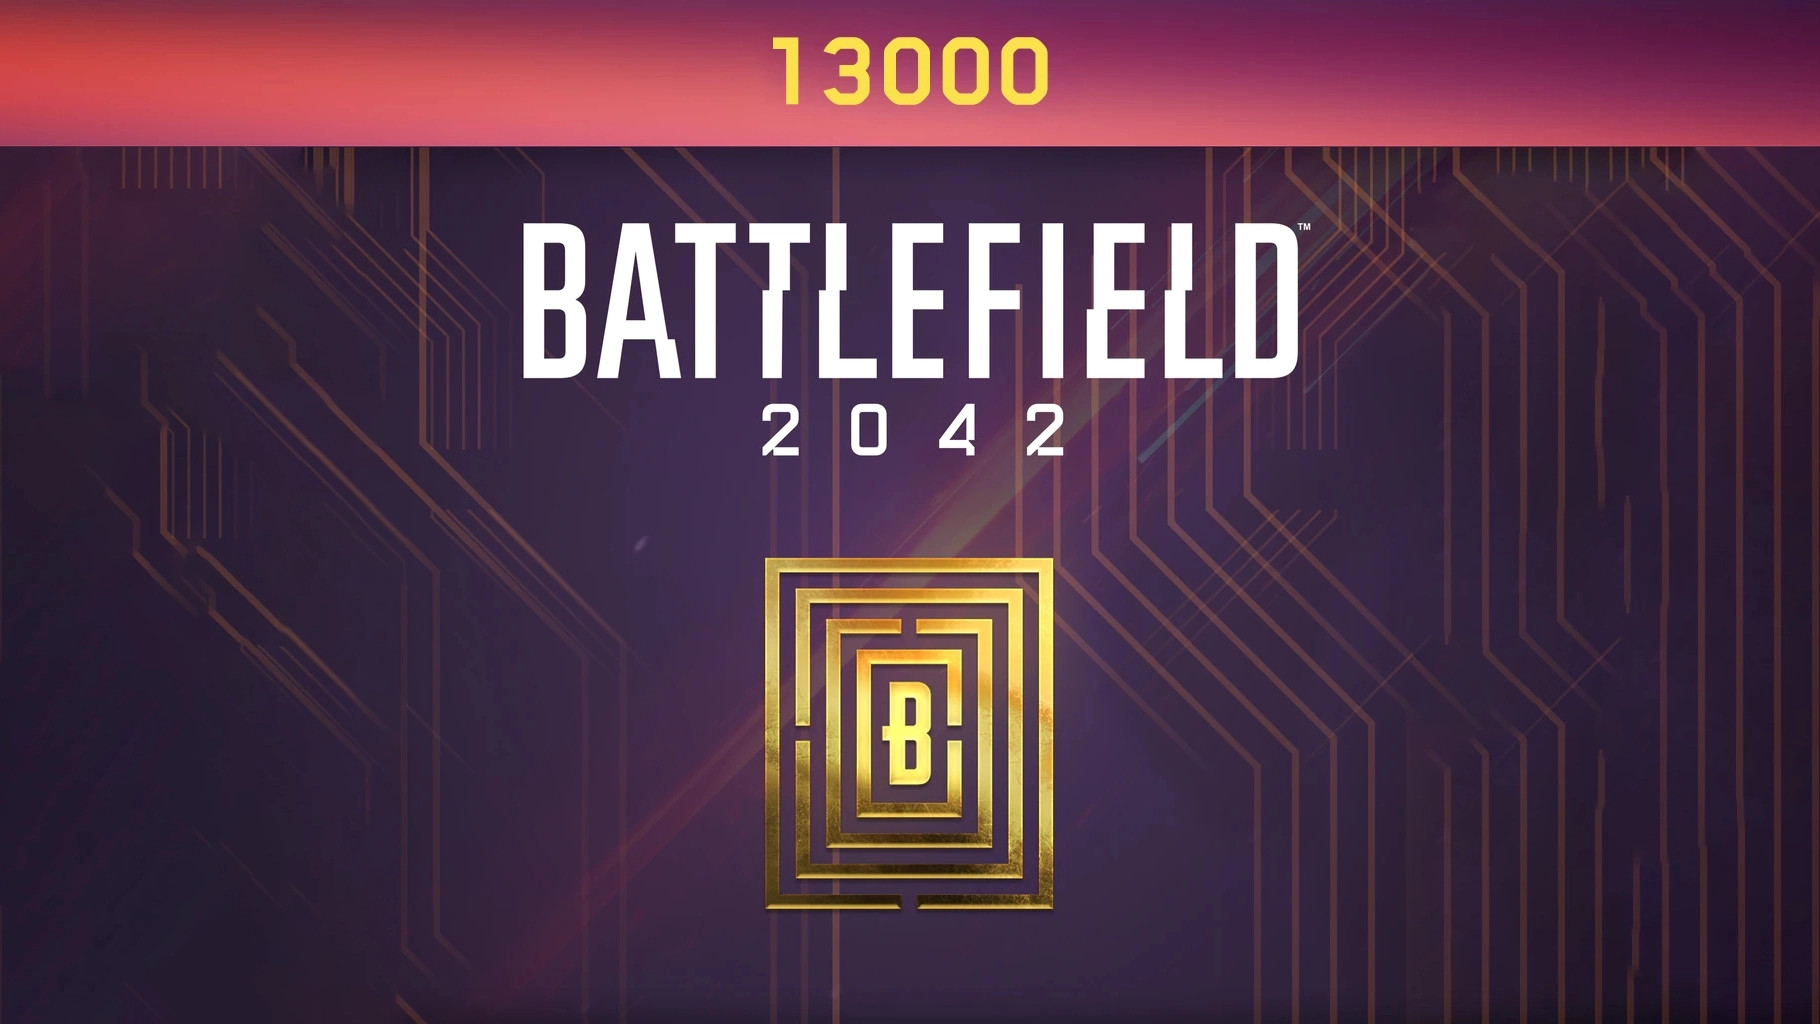 Battlefield 2042 - 13000 BFC Balance XBOX One / Xbox Series X|S CD Key 96.6$